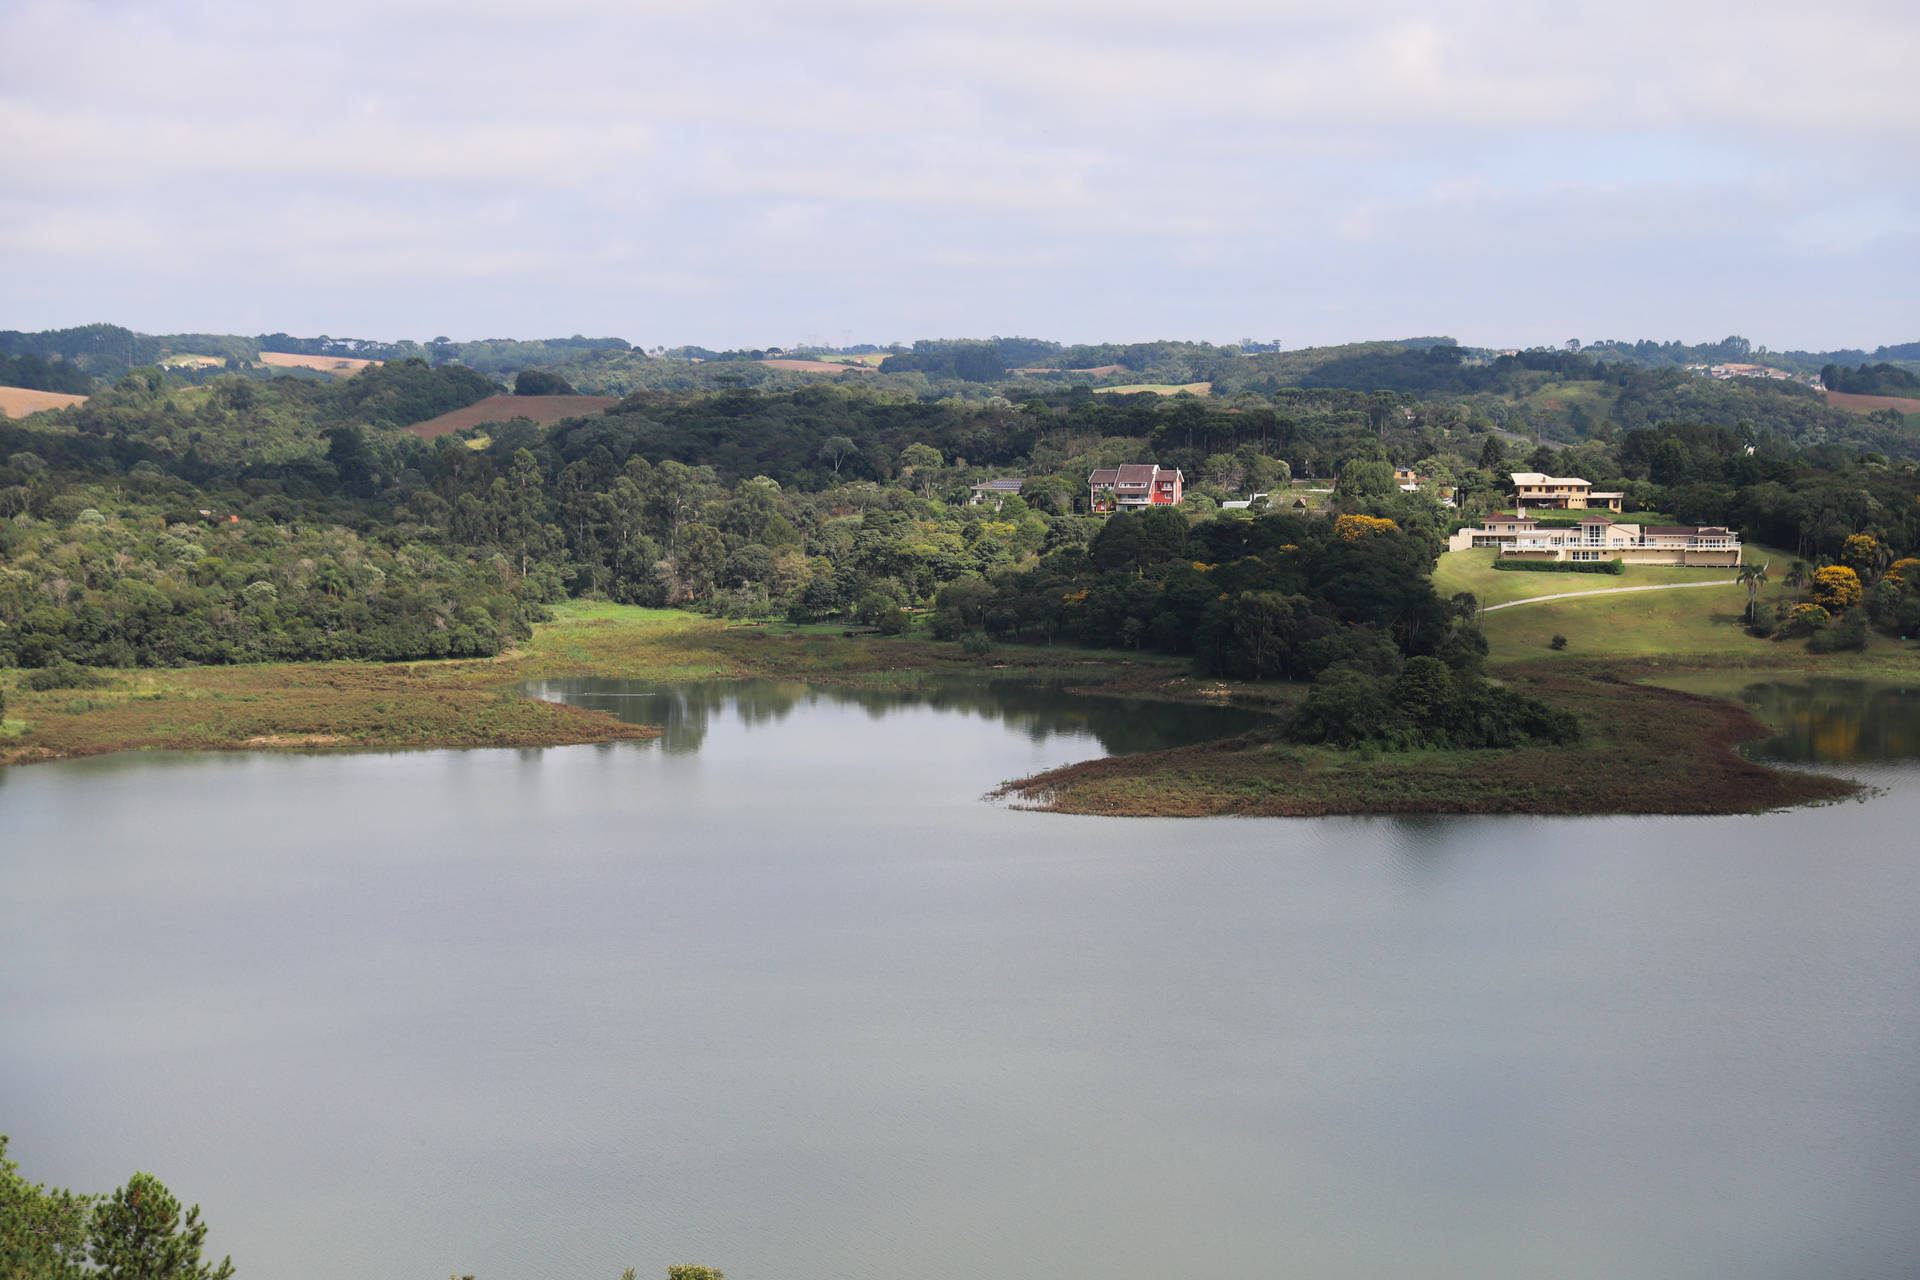  Obras que afetariam abastecimento em Curitiba e RMC são suspensas